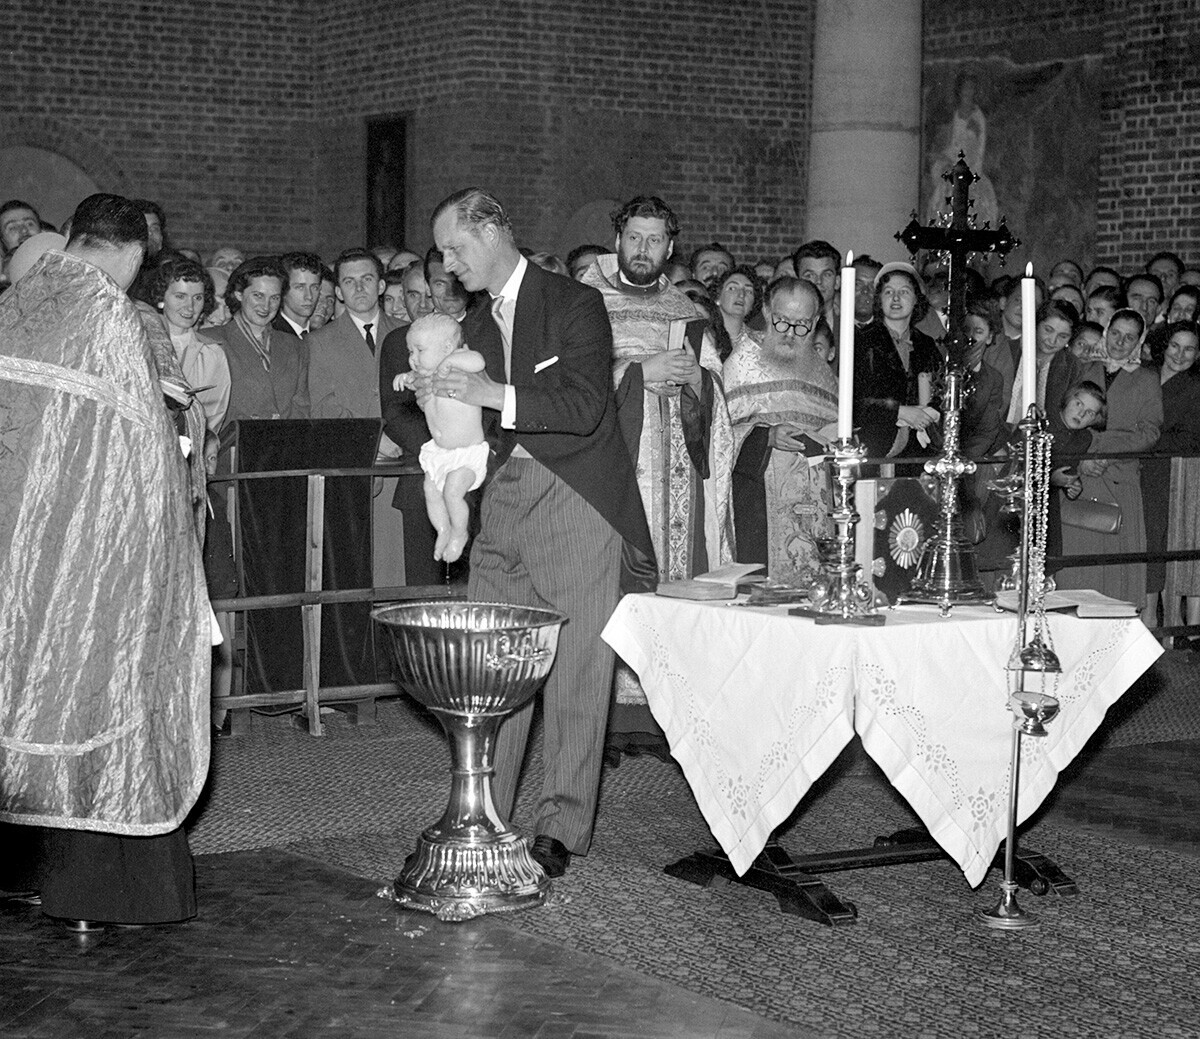 El Duque de Edimburgo, que es el padrino de la niña, levanta a la princesa María de la pila bautismal tras su bautizo en la iglesia ortodoxa serbia. La niña es hija de la sobrina del Duque, la Princesa Cristina de Hesse y el Príncipe Andréi de Yugoslavia.